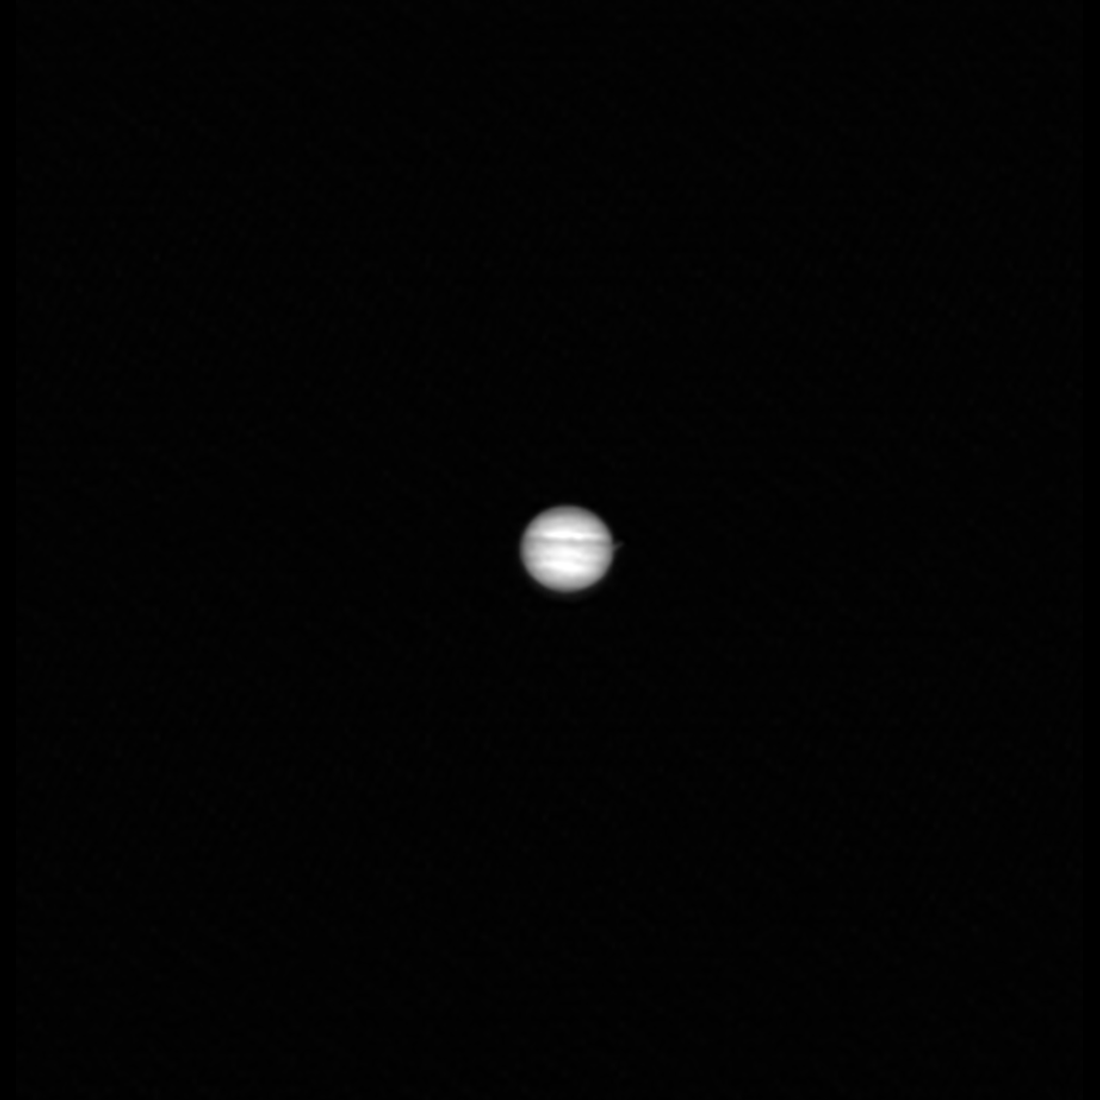 Foto de Júpiter feita pelo LRO, sonda lunar da Nasa. Imagem: LRO – Nasa